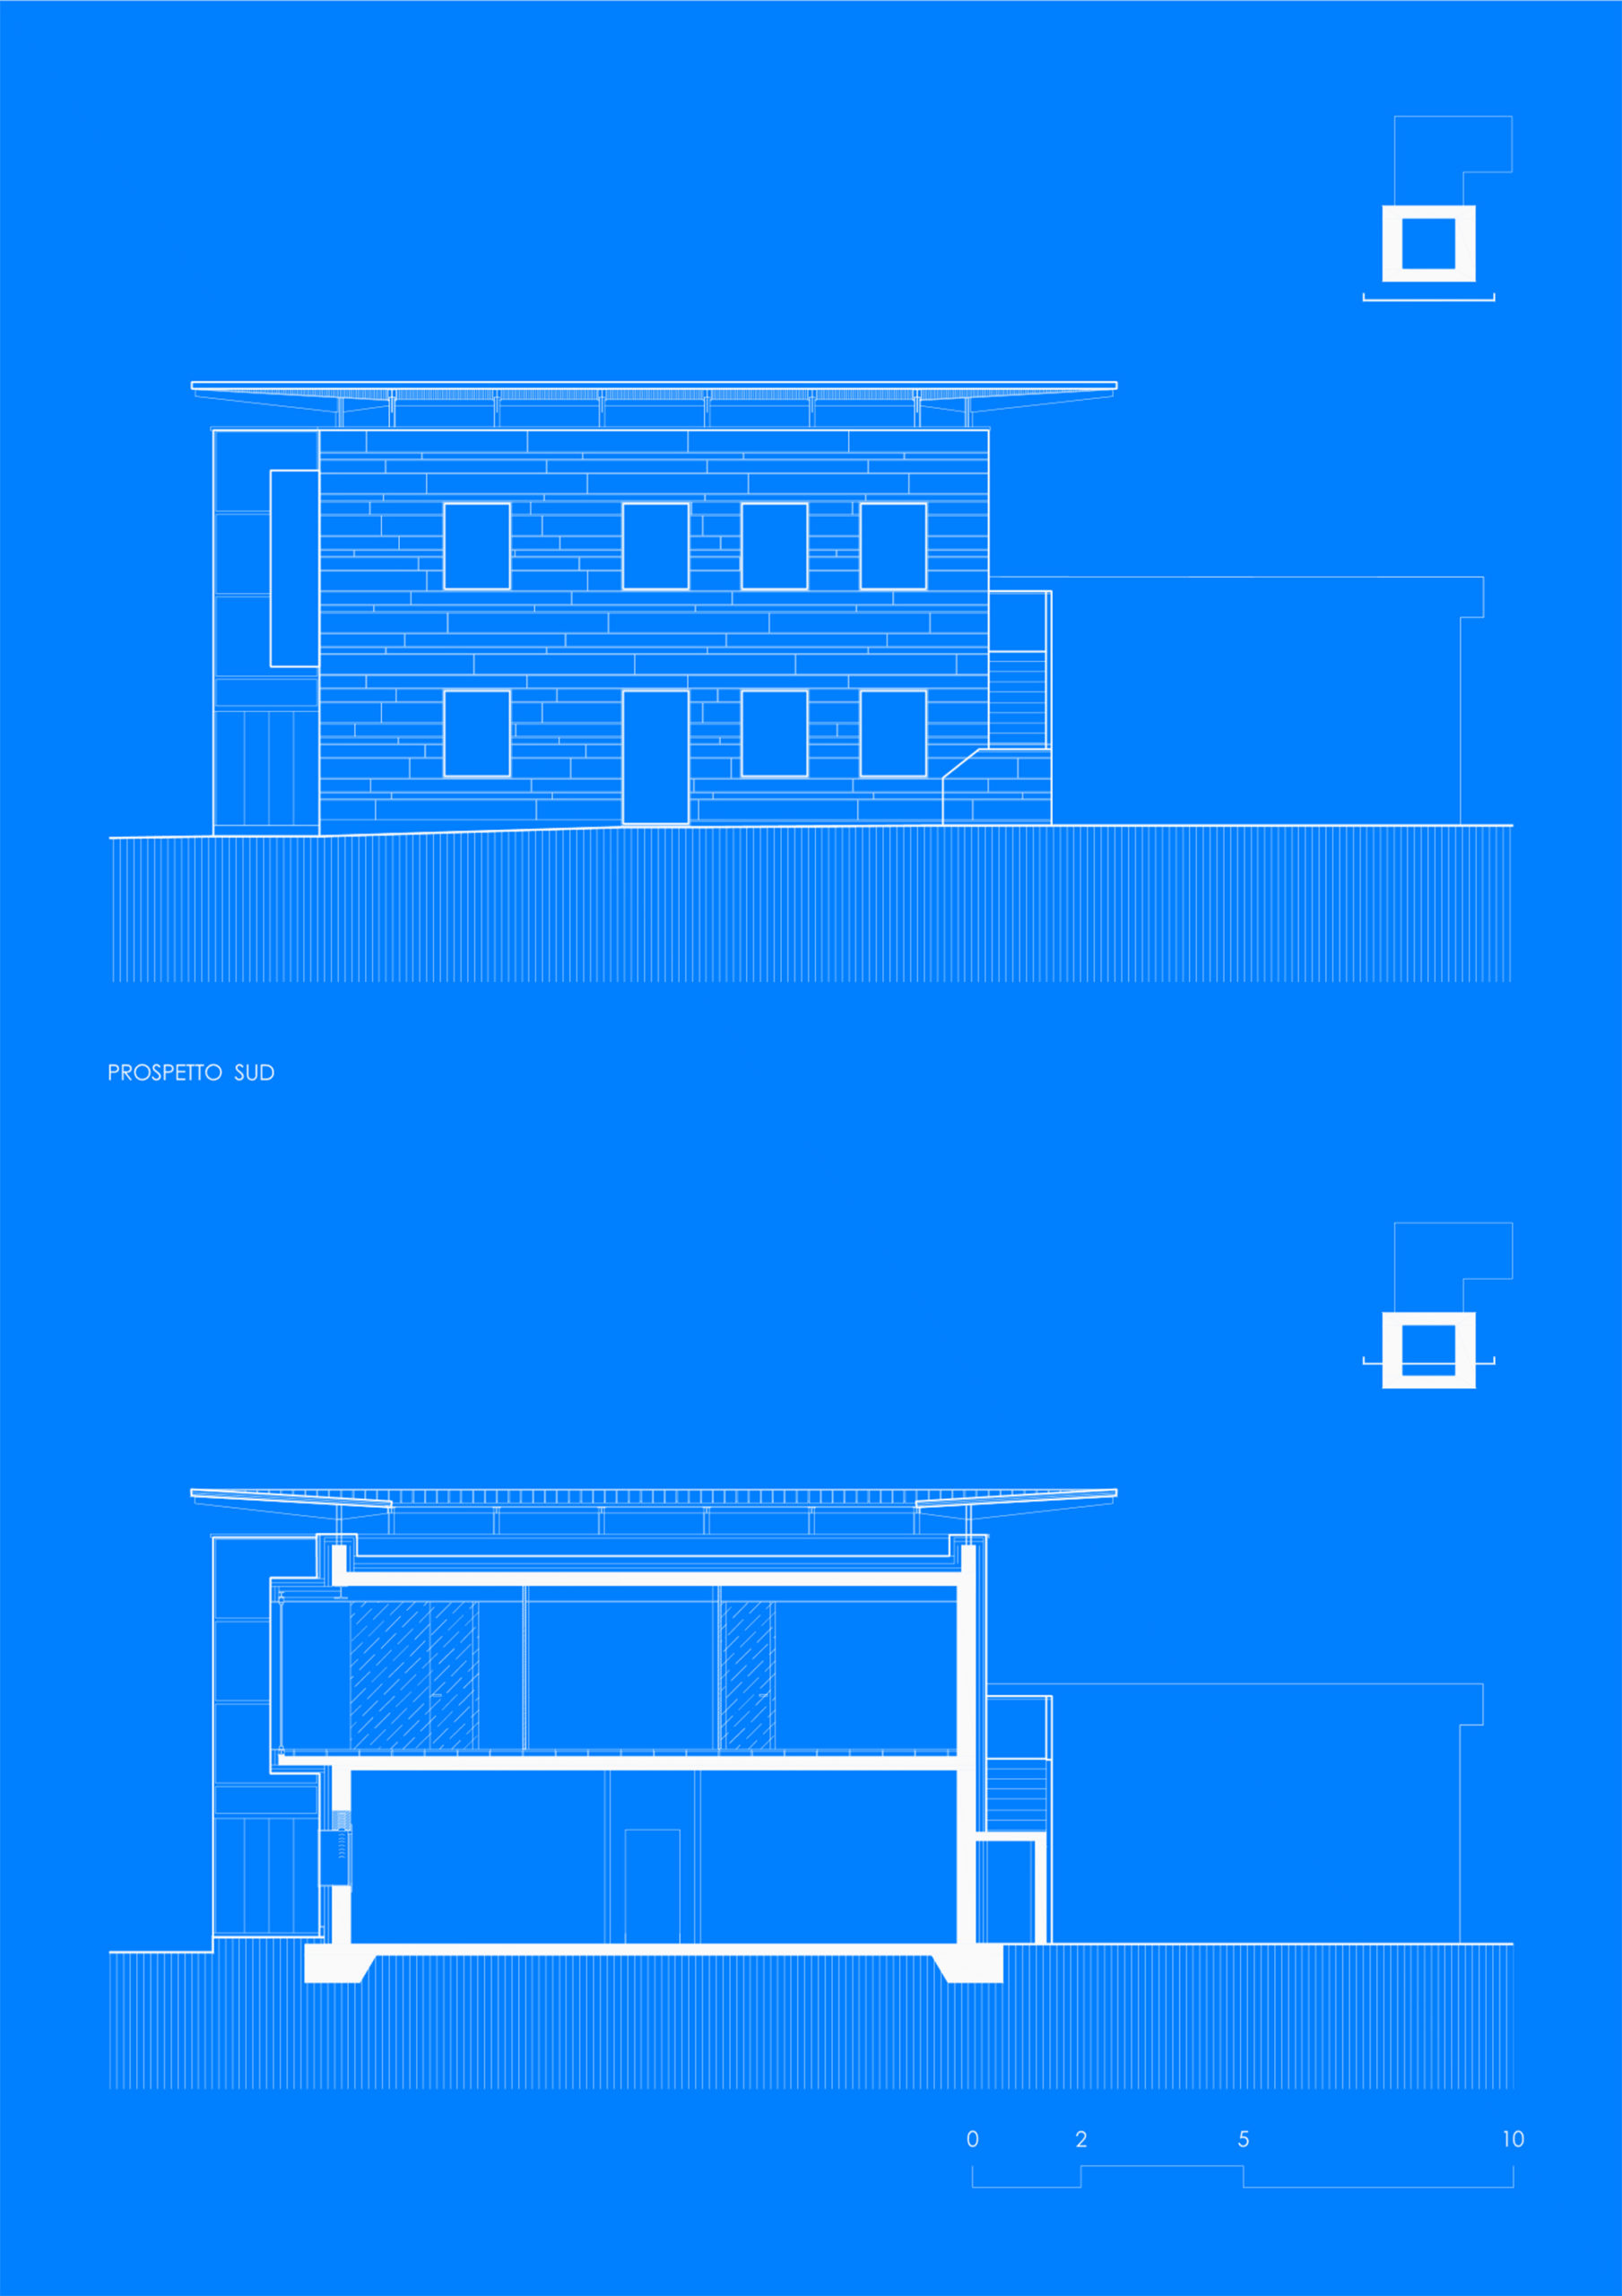 MAURISTUDIO-umberto-mauri-mauri-studio-bosisio-parini-New-Office-Building-Bosisio-Parini-Lecco-work-in-progress-Ventilated-Facade_final_03_2000